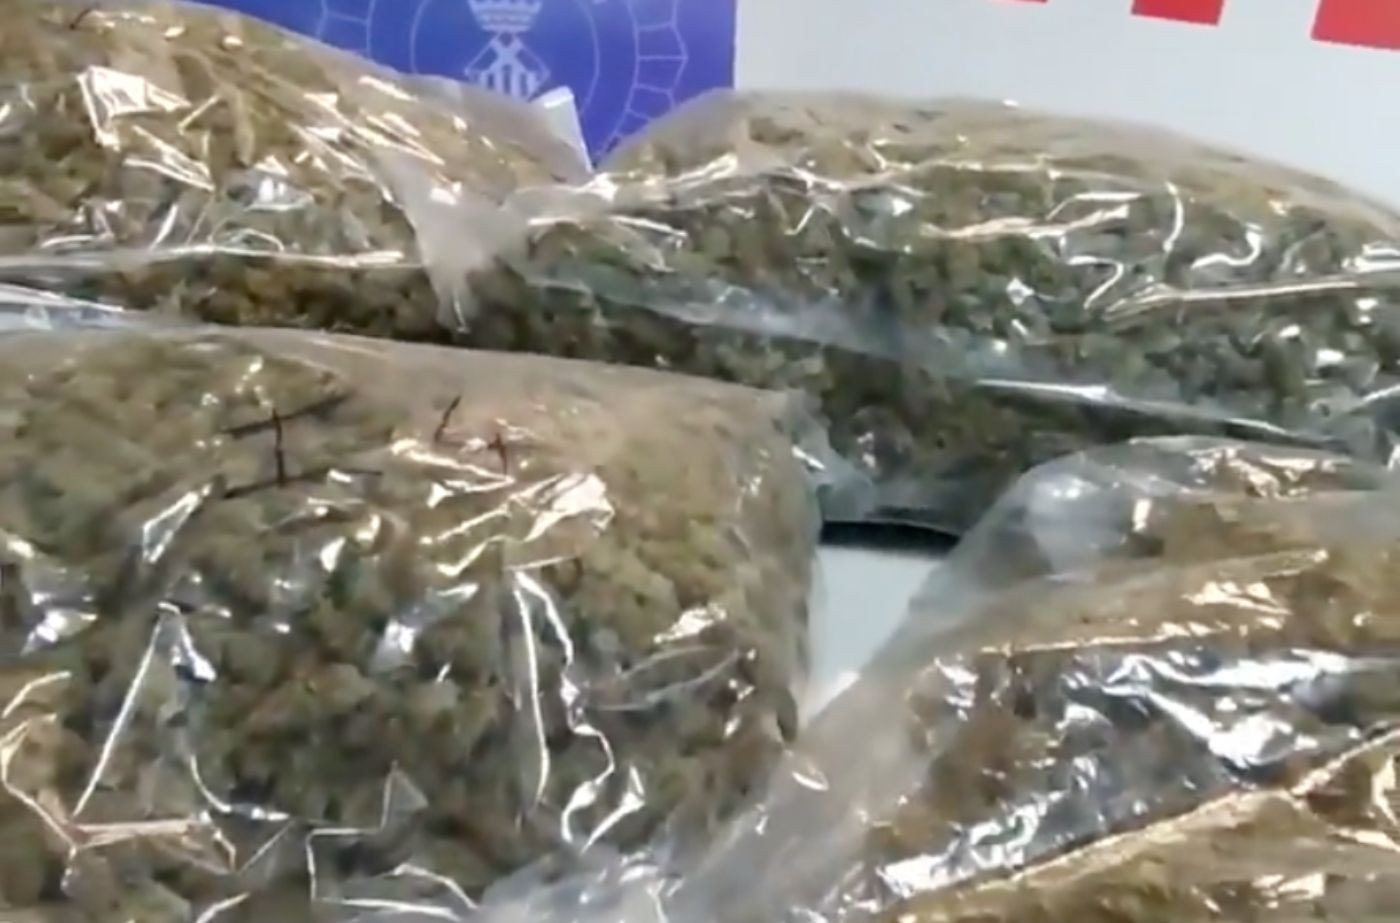 Bolsas de marihuana listas para su distribución / MOSSOS D'ESQUADRA